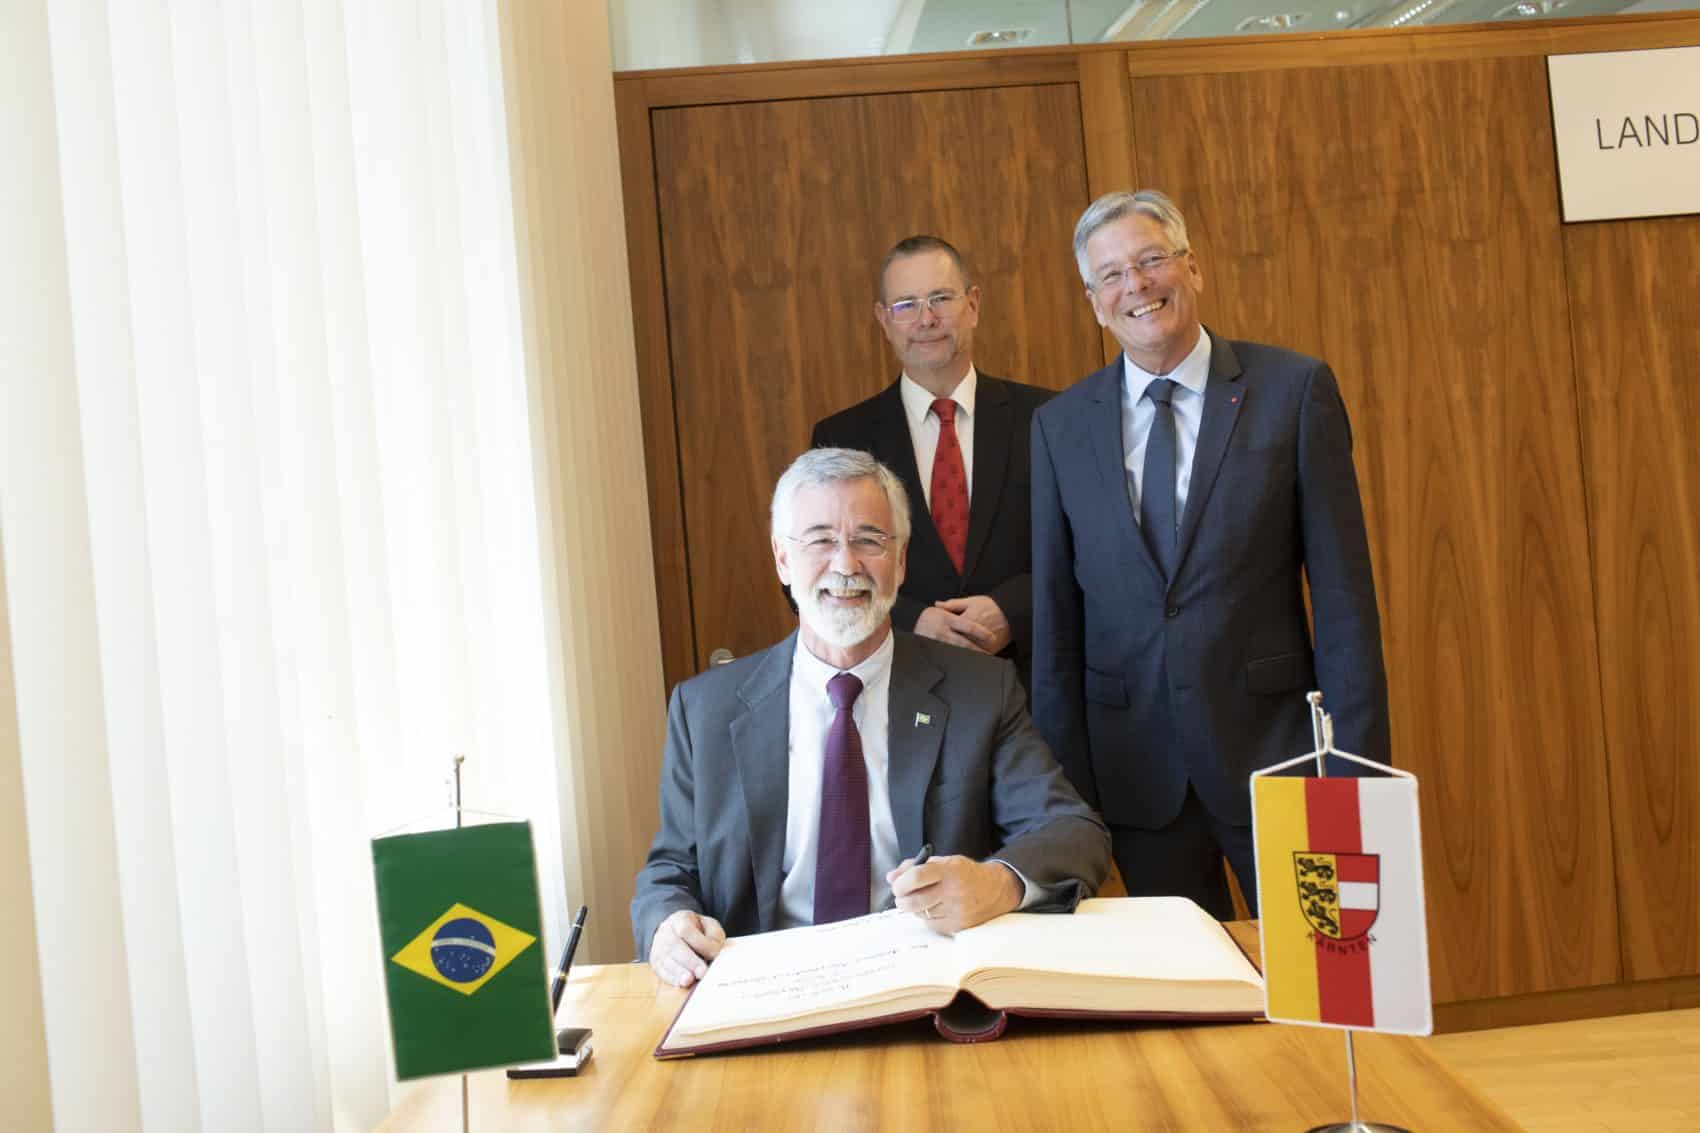 LH Peter Kaiser (r.) begrüßt den brasilianischen Botschafter S.E. J Antonio Marcondes (l.) gemeinsam mit Landesamtsdirektor Dieter Platzer (hinten) bei seinem Antrittsbesuch im Amt der Kärntner Landesregierung.